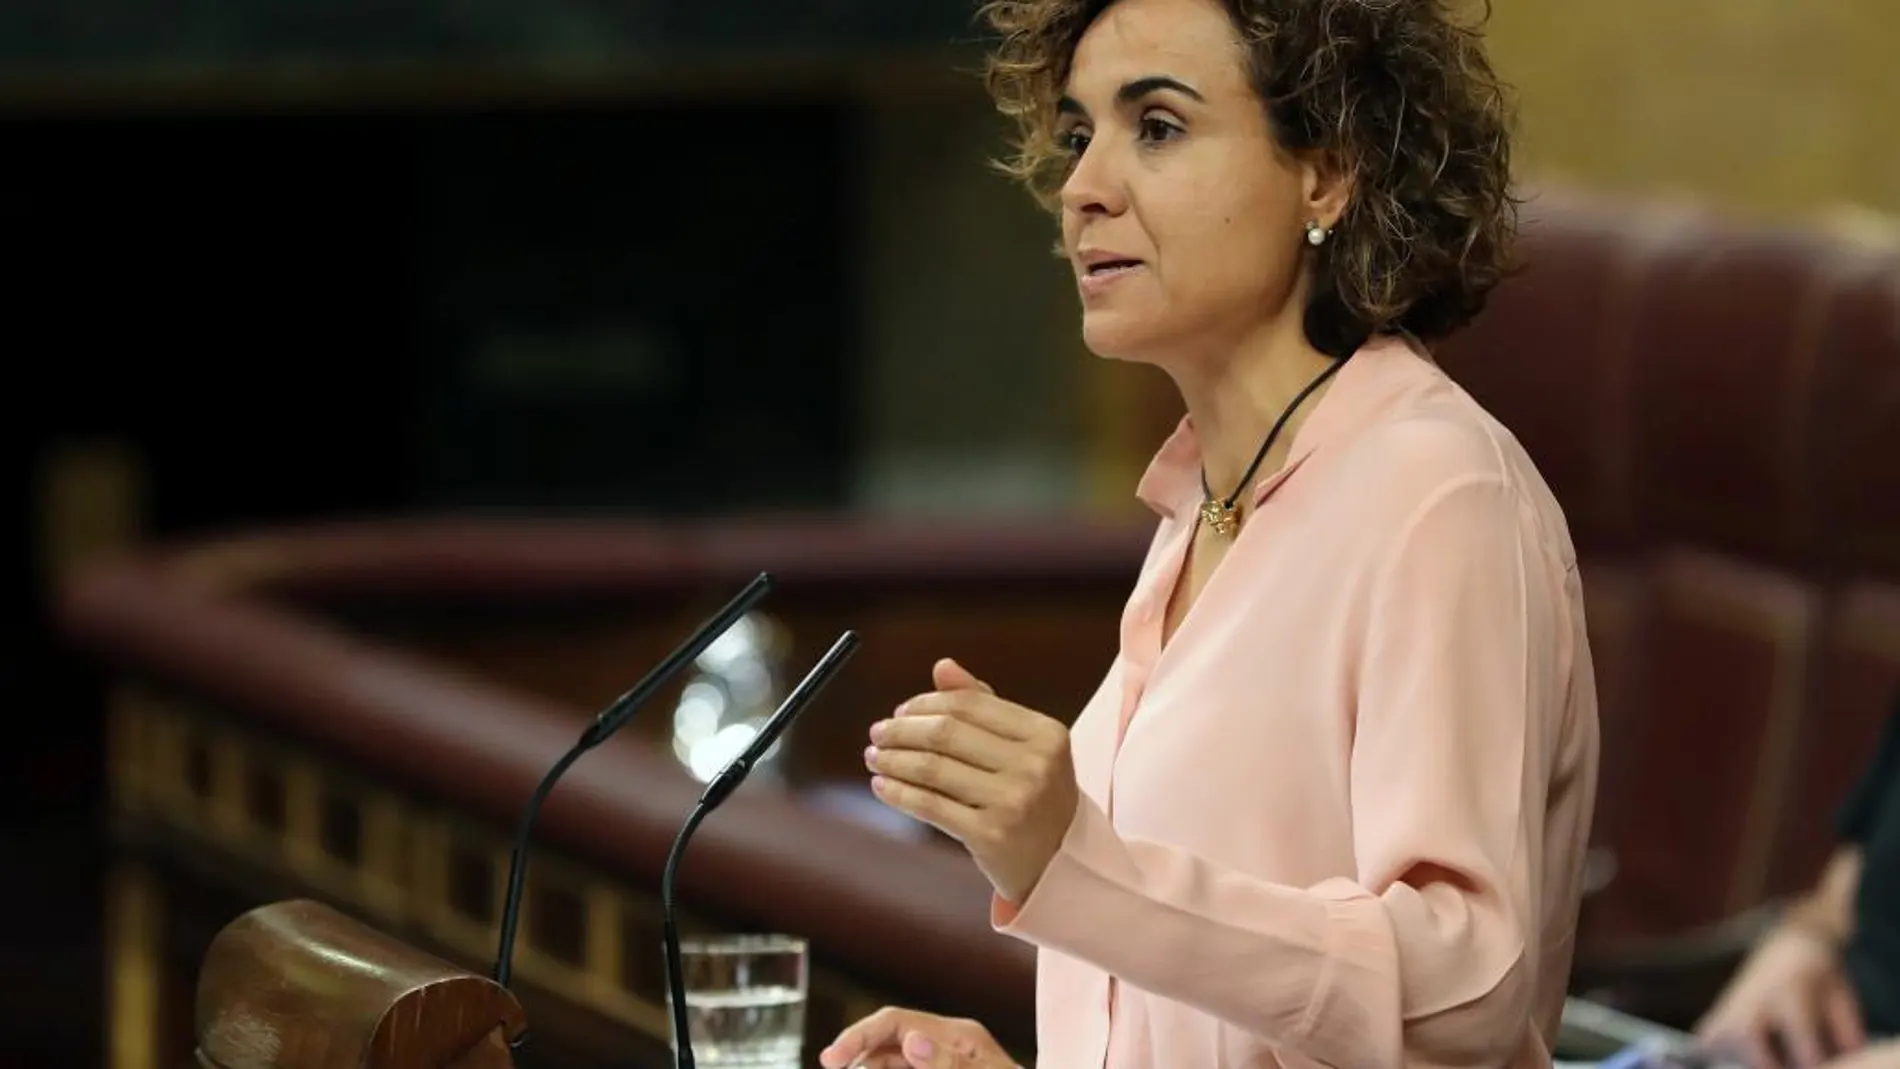 La la ministra de Sanidad, Servicios Sociales e Igualdad, Dolors Montserrat, durante una intervención en el Pleno del Congreso de los Diputados